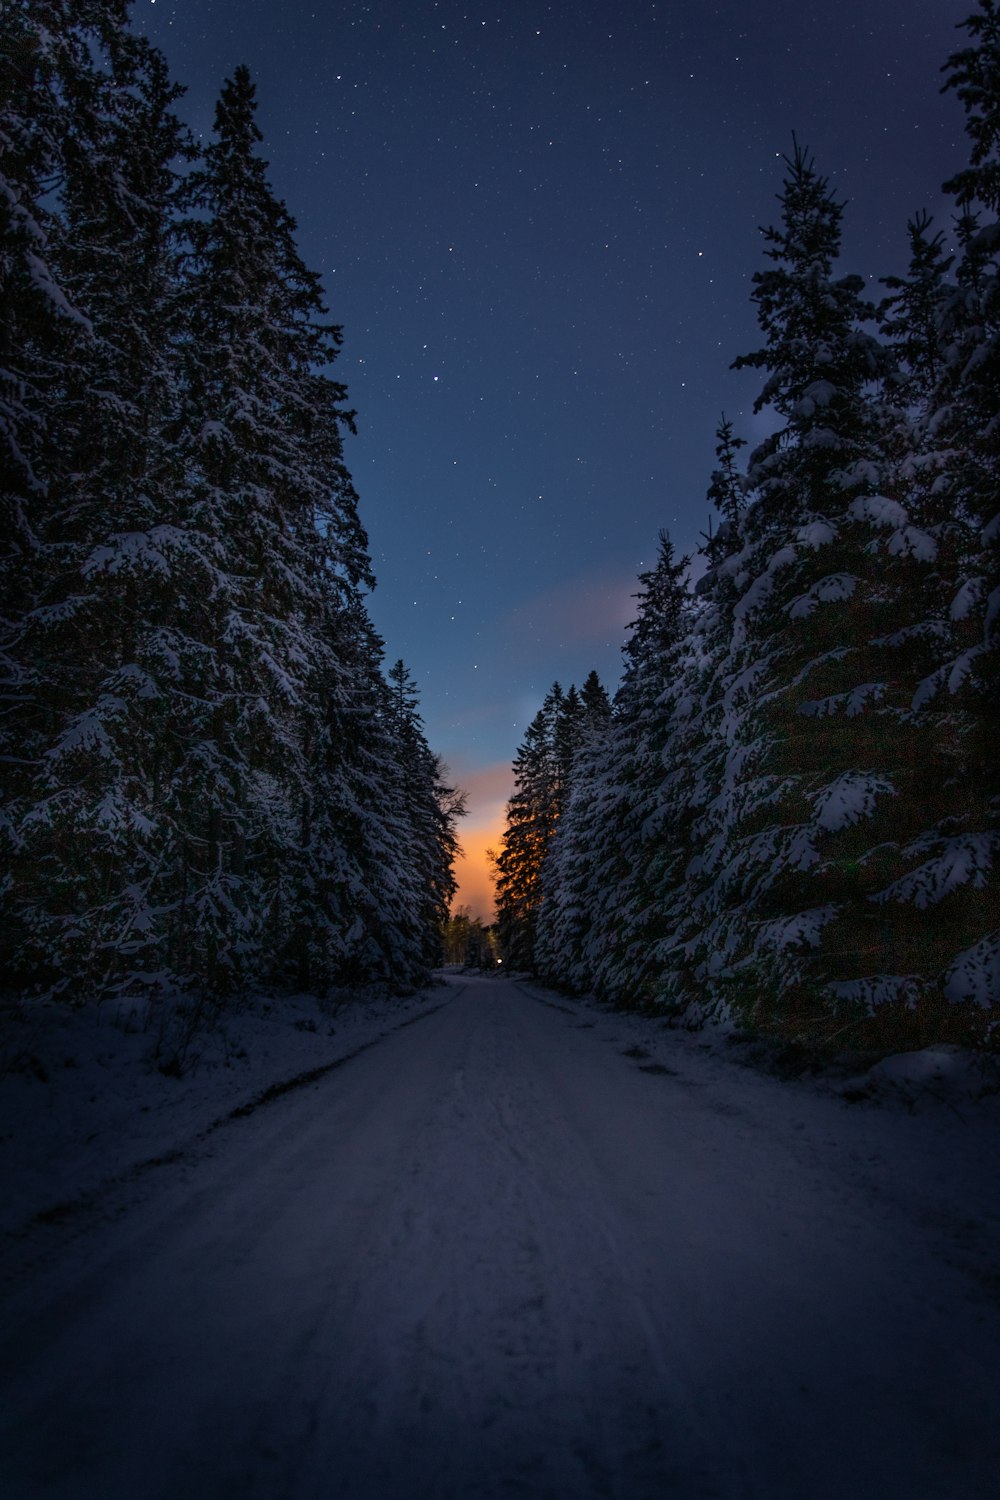 Carretera cubierta de nieve entre los árboles durante la noche